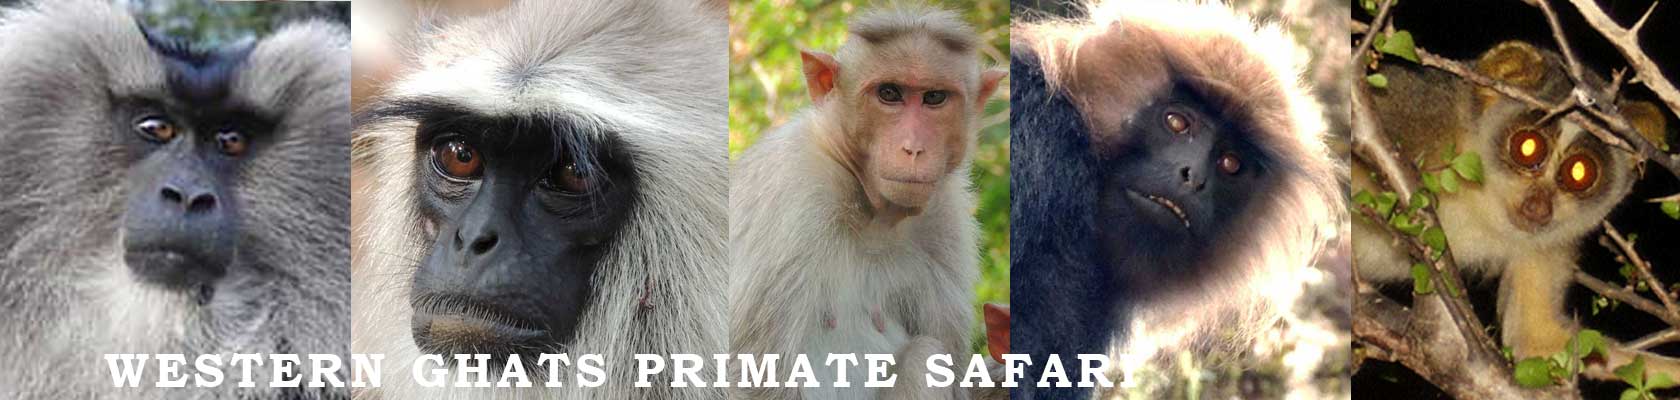 primates tour in India